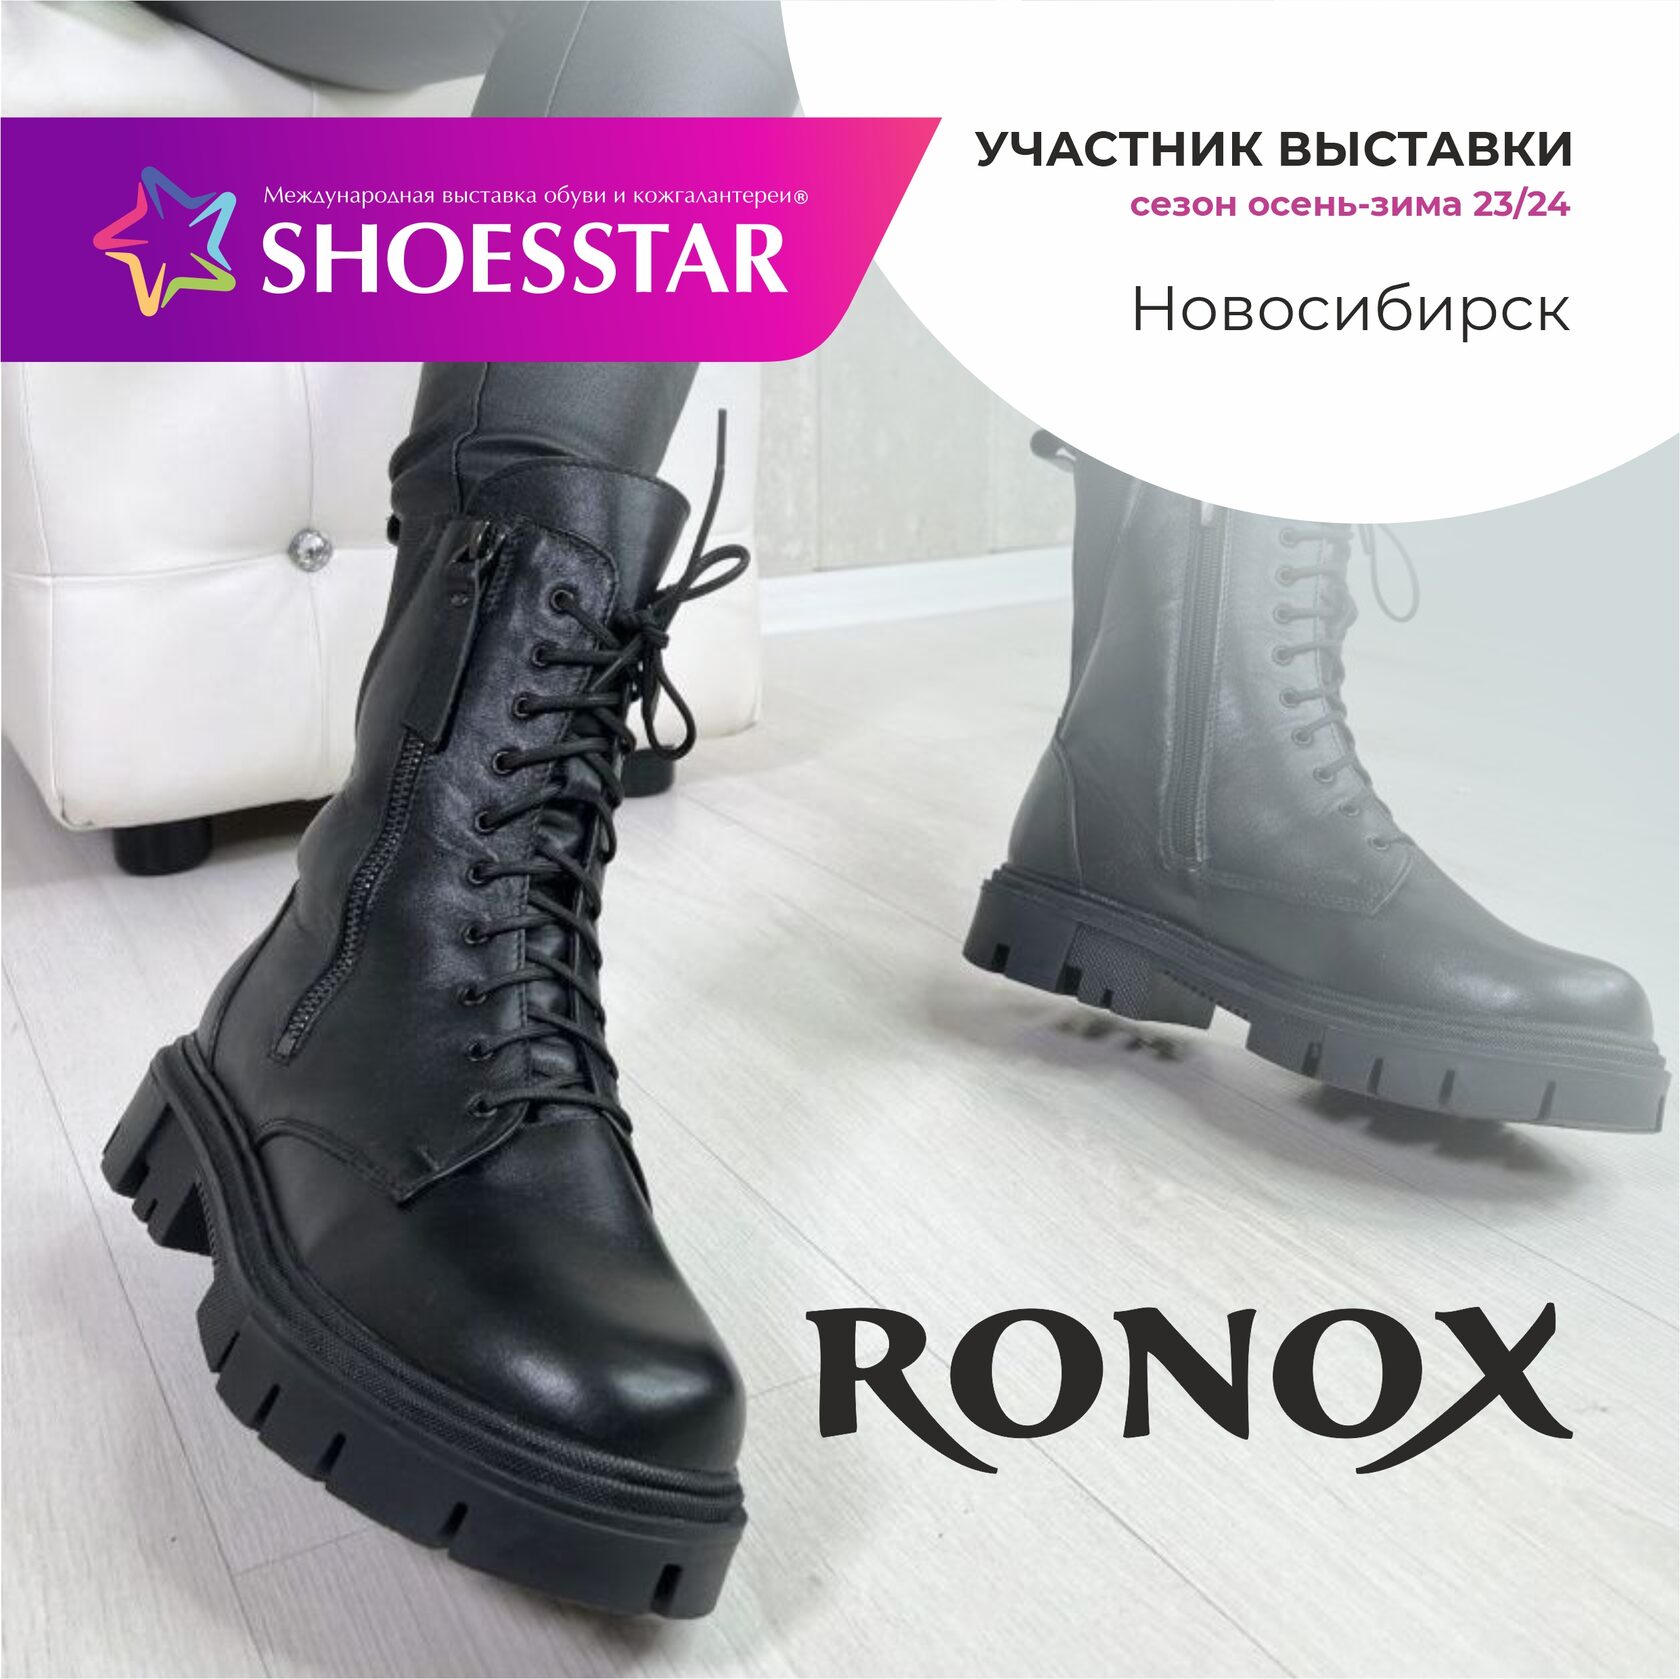 Ронокс обувь новосибирск каталог обуви